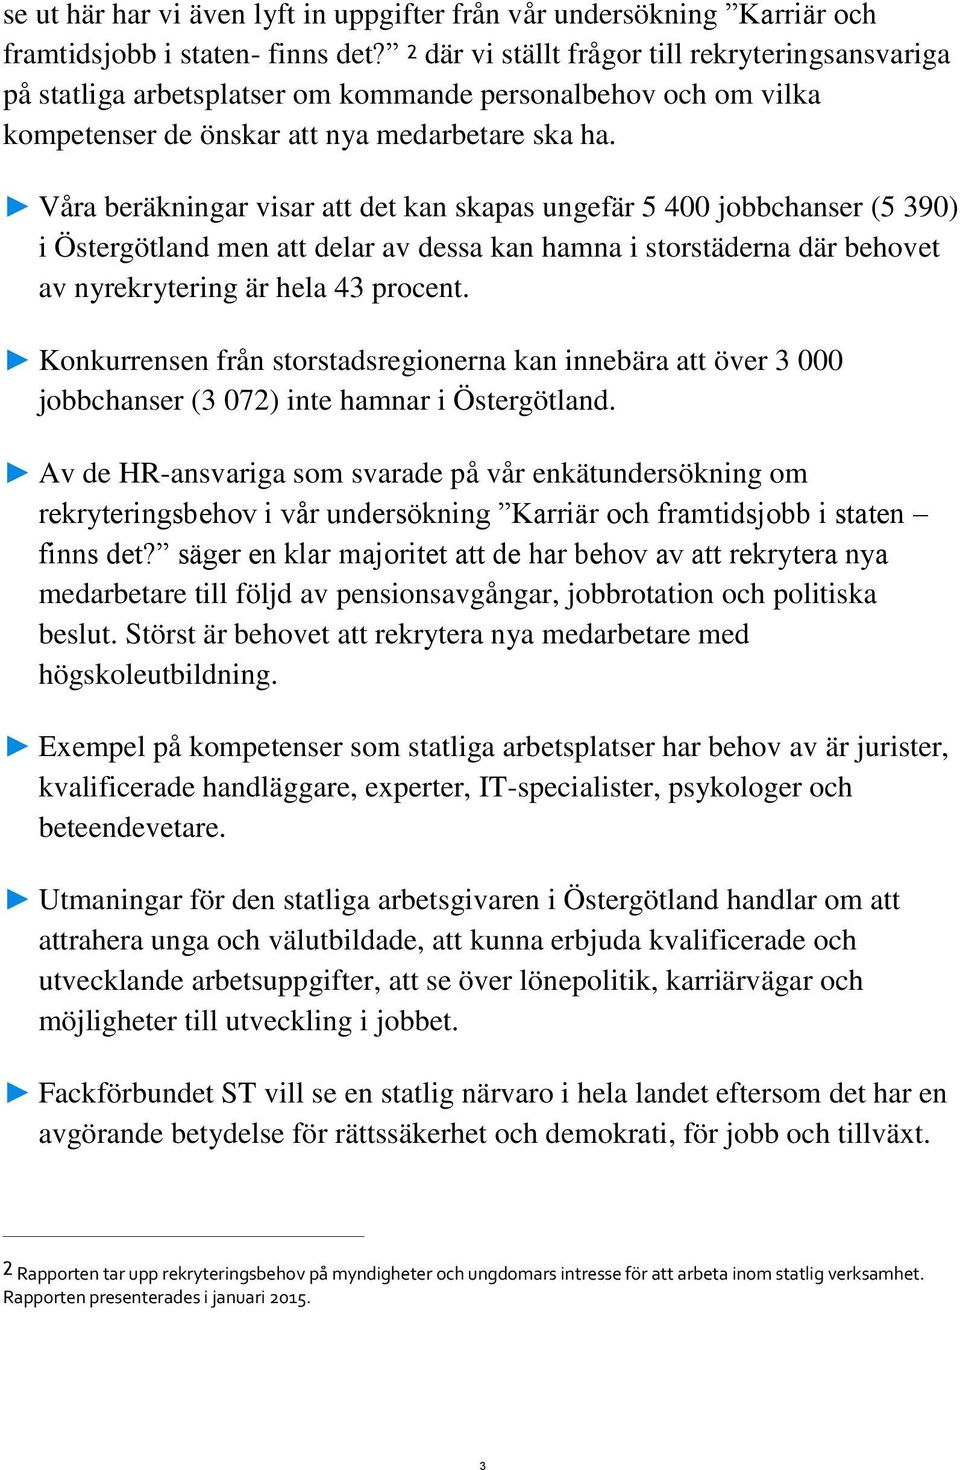 Våra beräkningar visar att det kan skapas ungefär 5 400 jobbchanser (5 390) i Östergötland men att delar av dessa kan hamna i storstäderna där behovet av nyrekrytering är hela 43 procent.